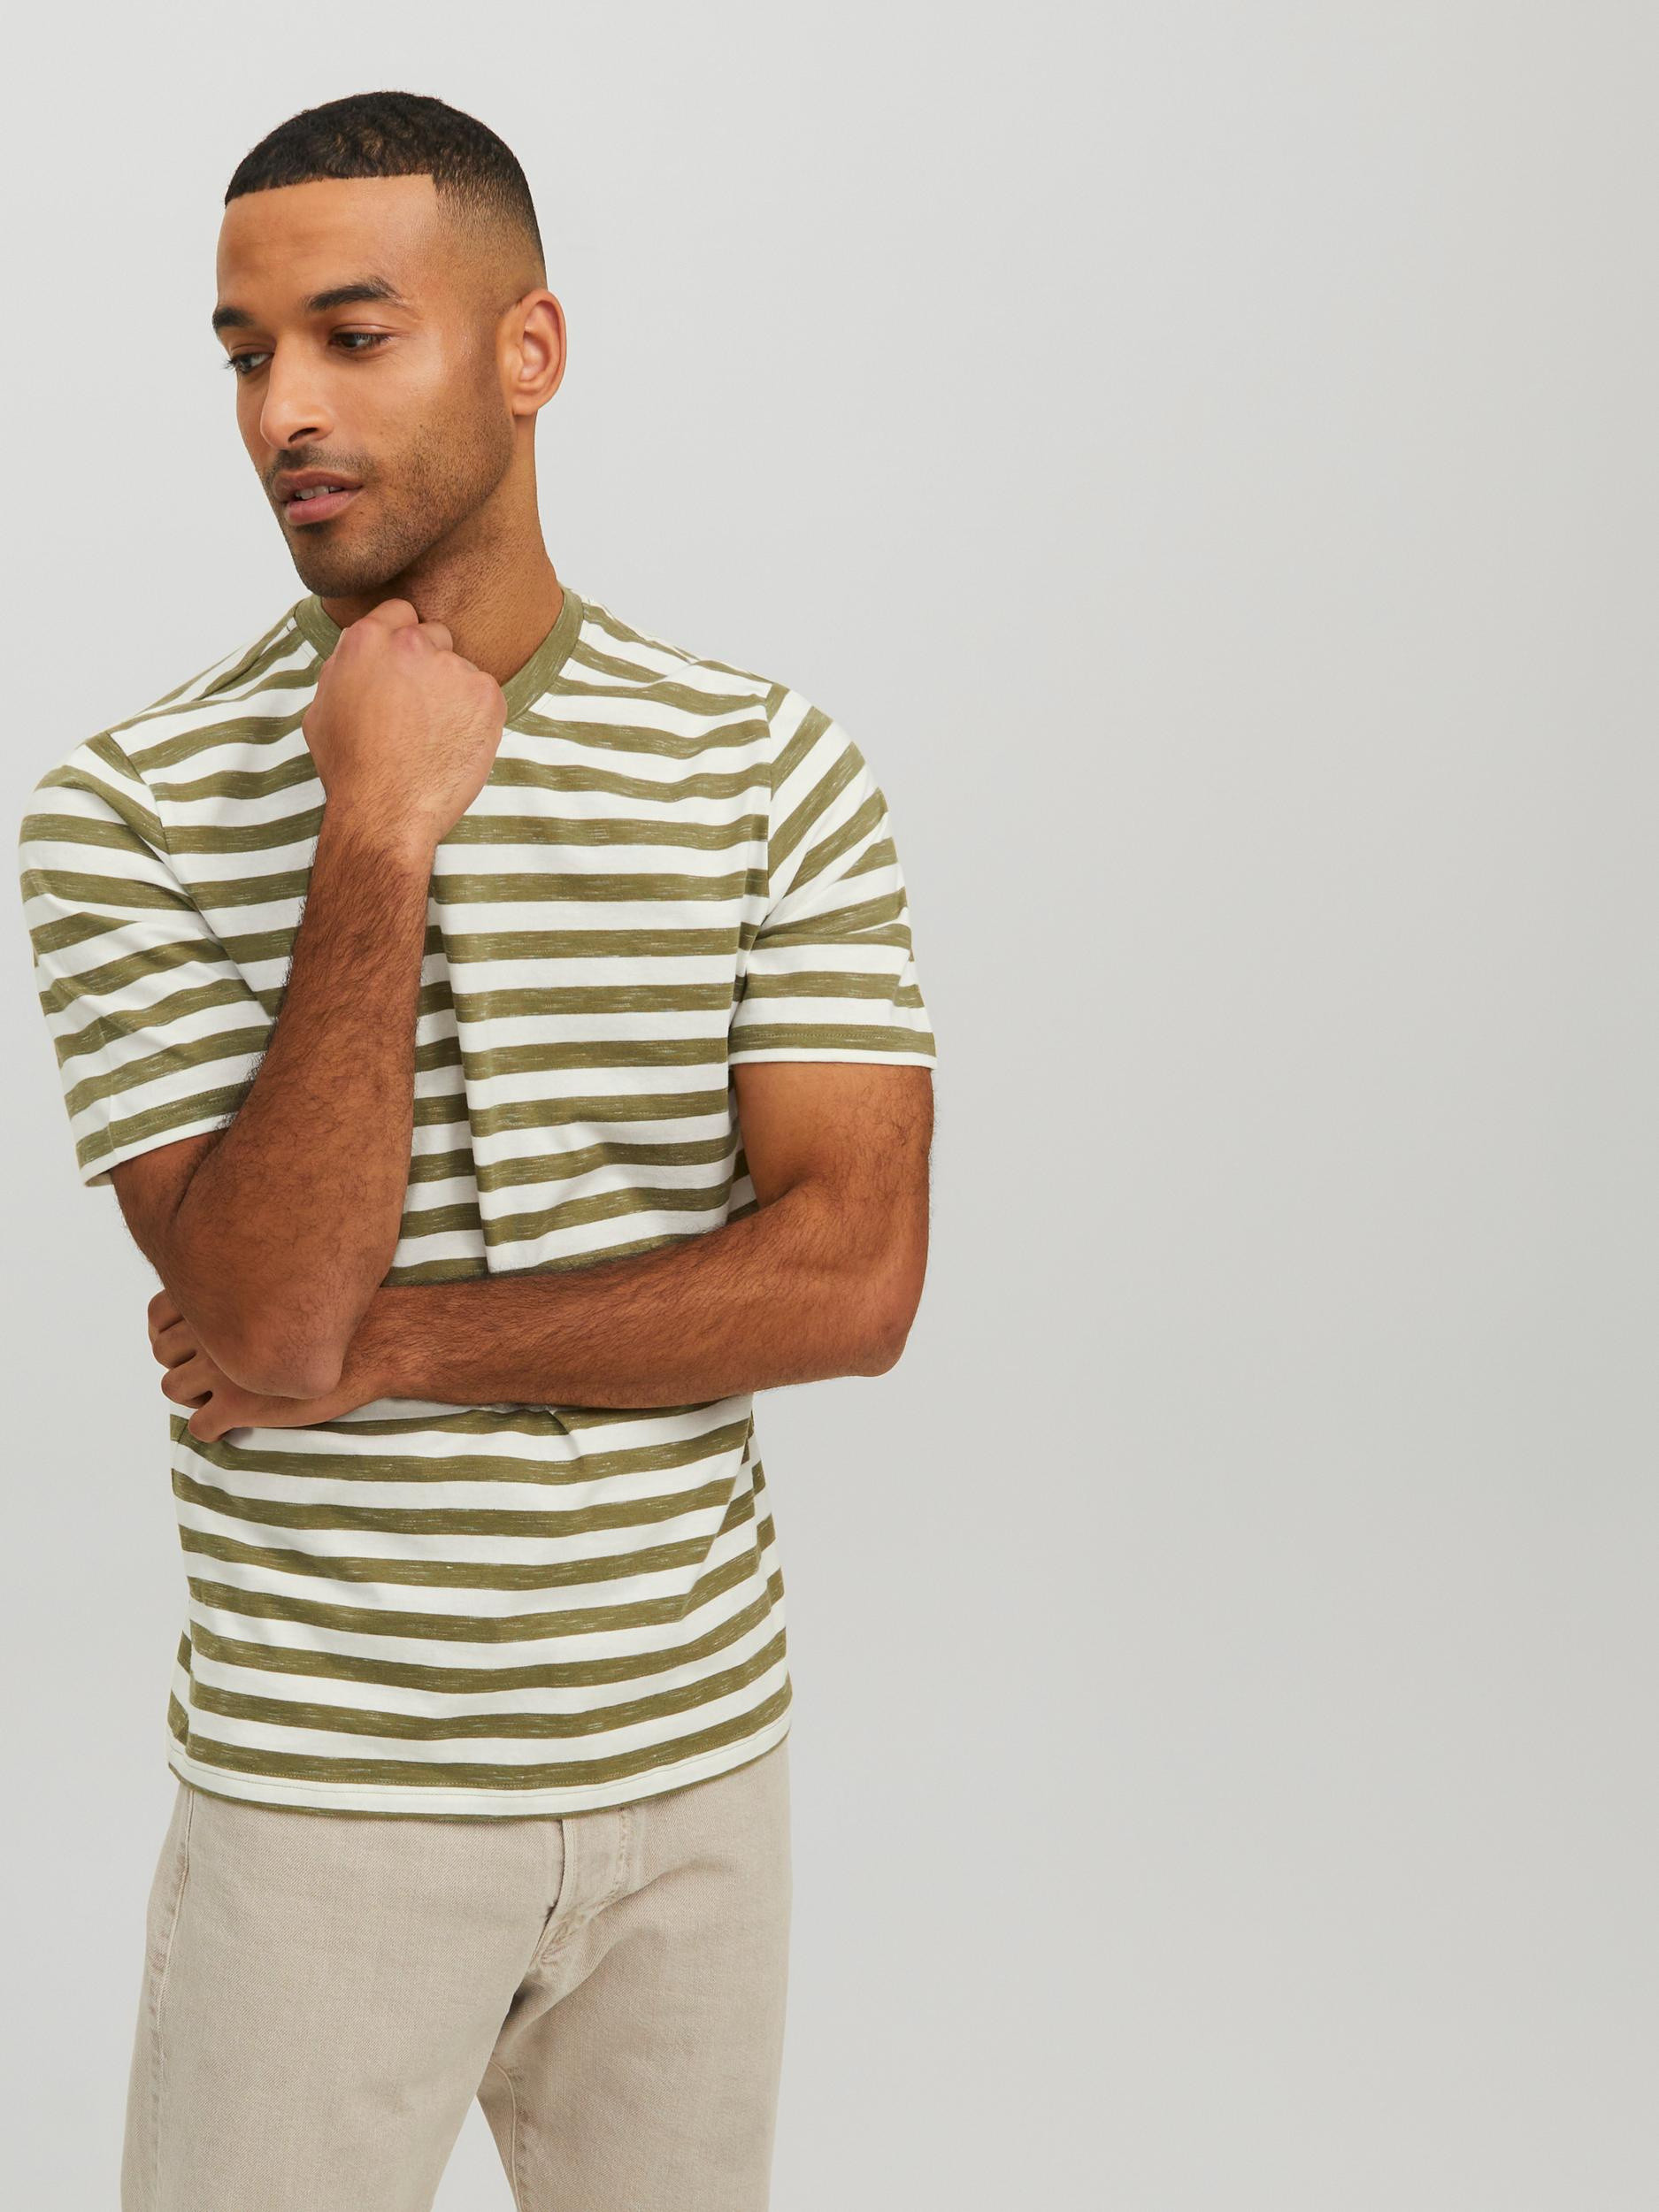 Jack & Jones - Striped T-Shirt, Light Green, large image number 2